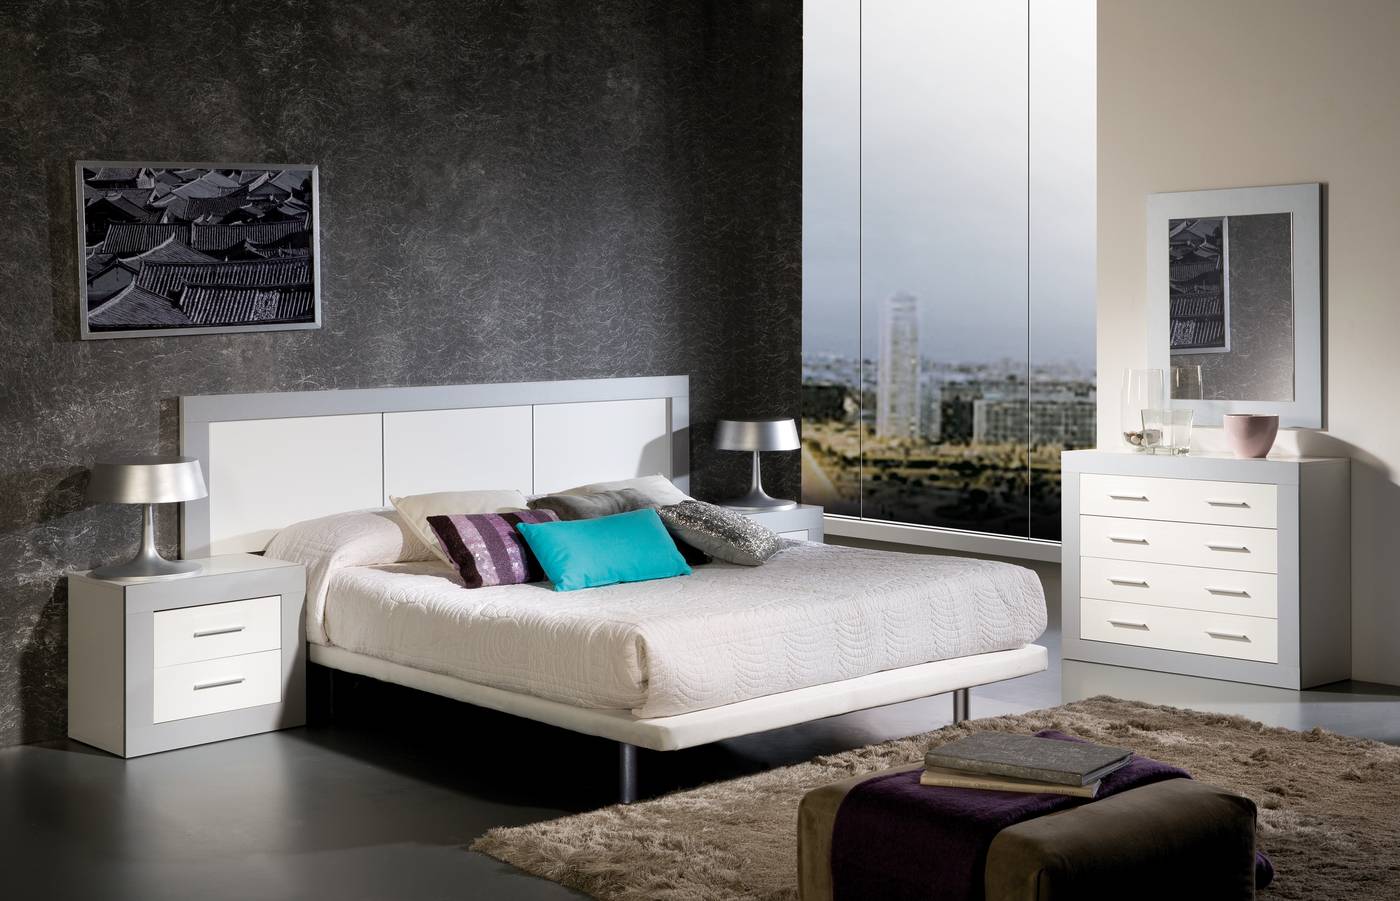 Oferta de Mueble Online » Dormitorio Moderno Online » Dormitorio Blanco